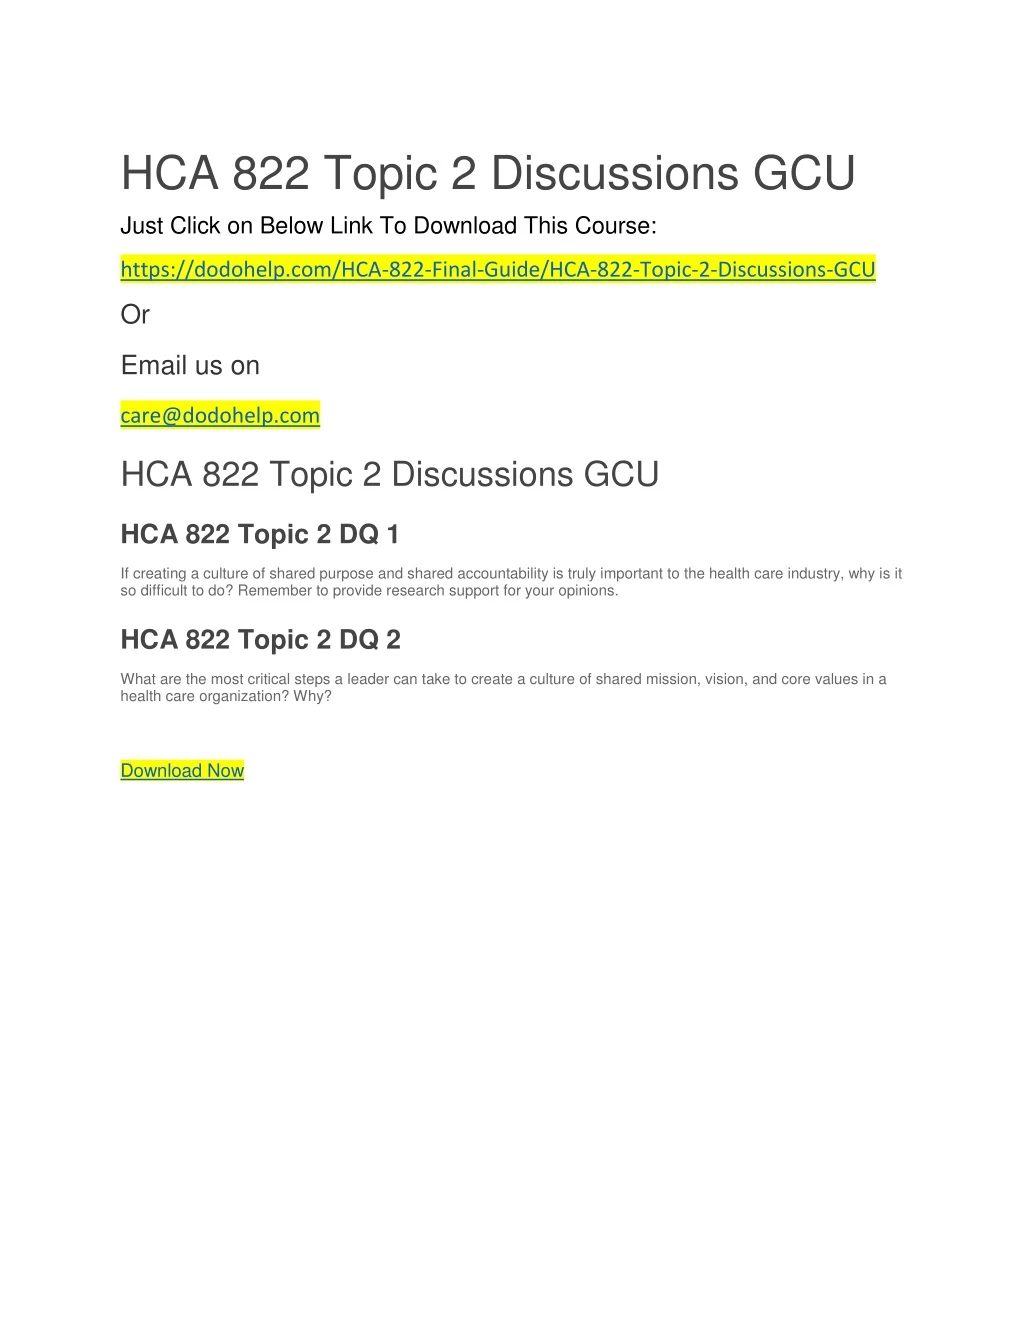 hca 822 topic 2 discussions gcu just click